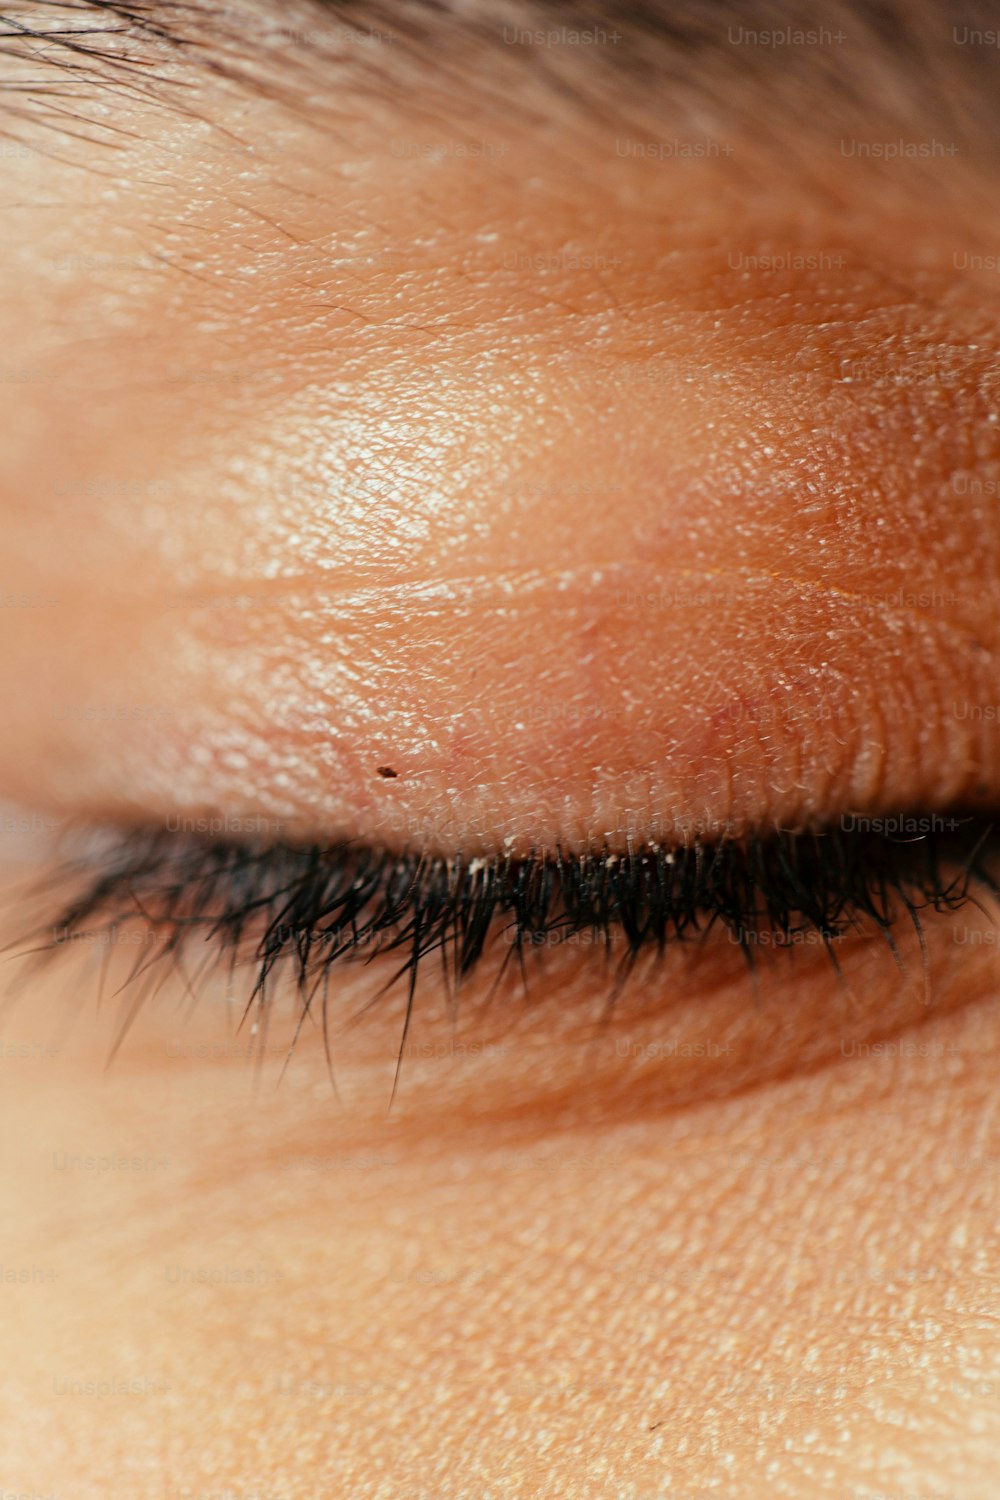 un primer plano del ojo de una persona con pestañas largas